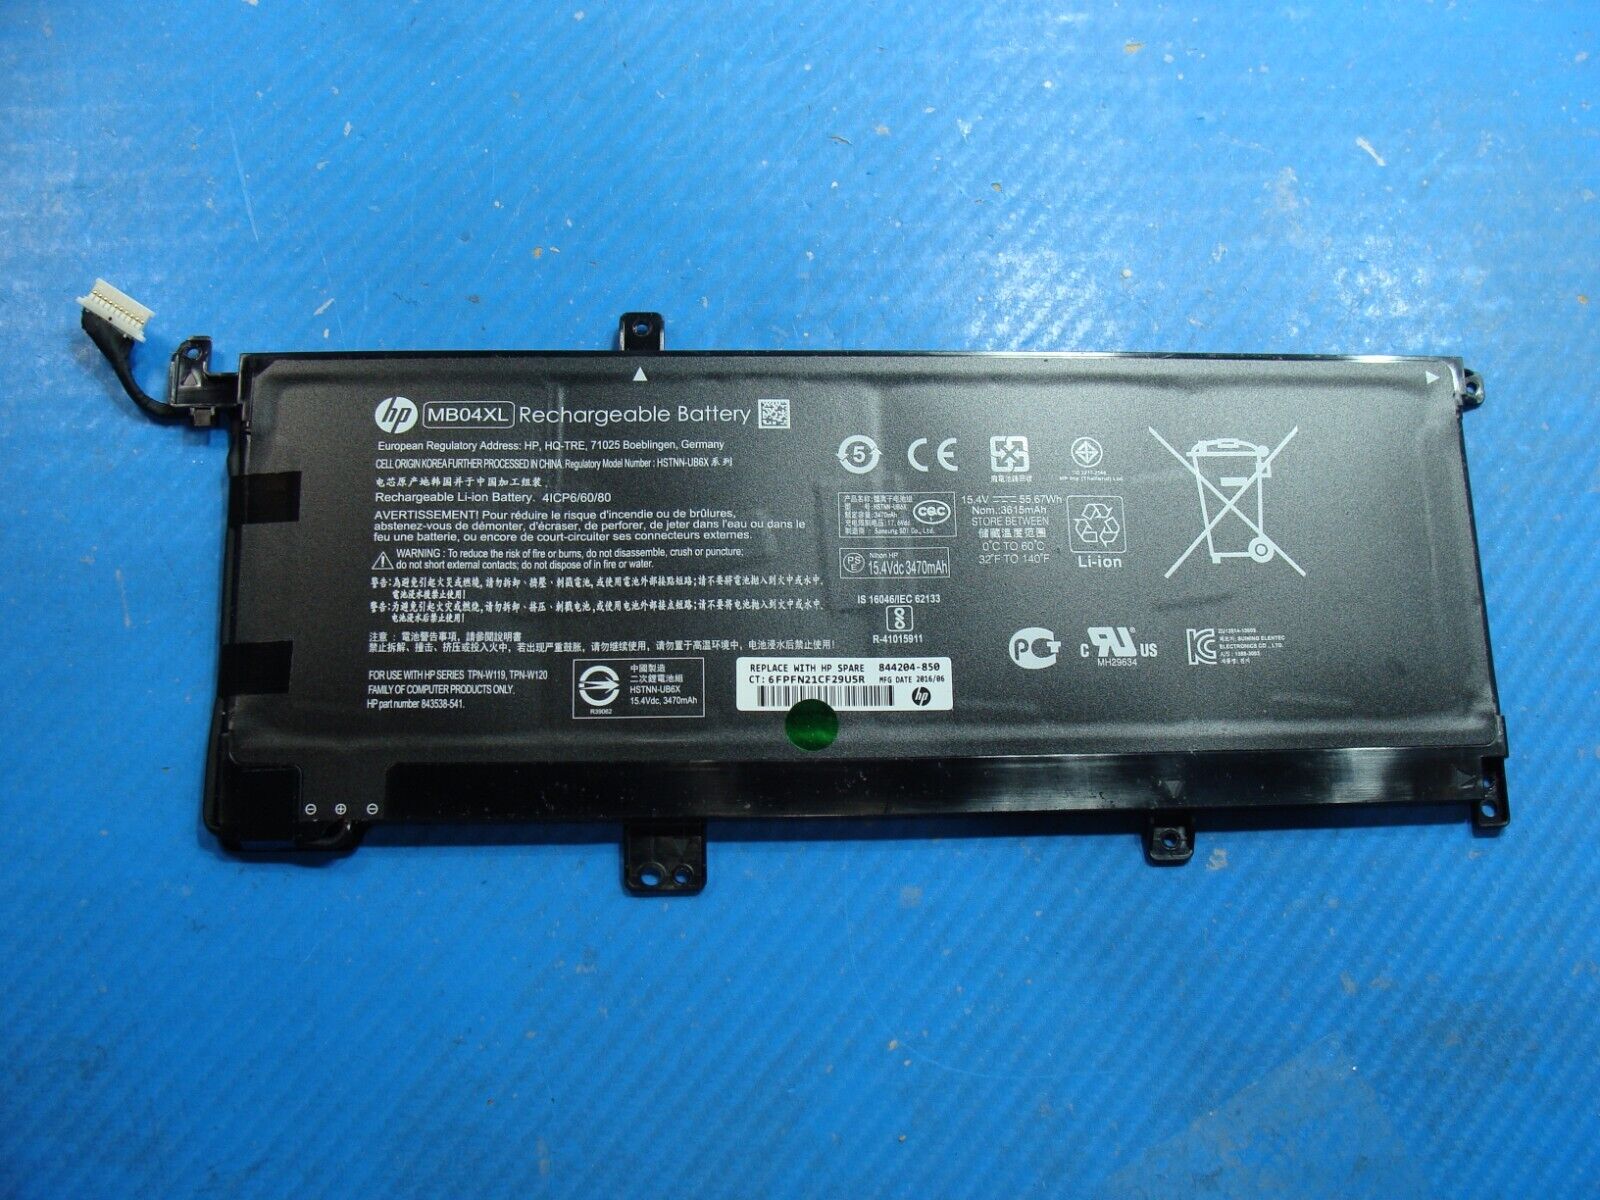 HP ENVY x360 m6-ar004dx 15.6 Battery 15.4V 55.67Wh 3615mAh MB04XL 844204-850